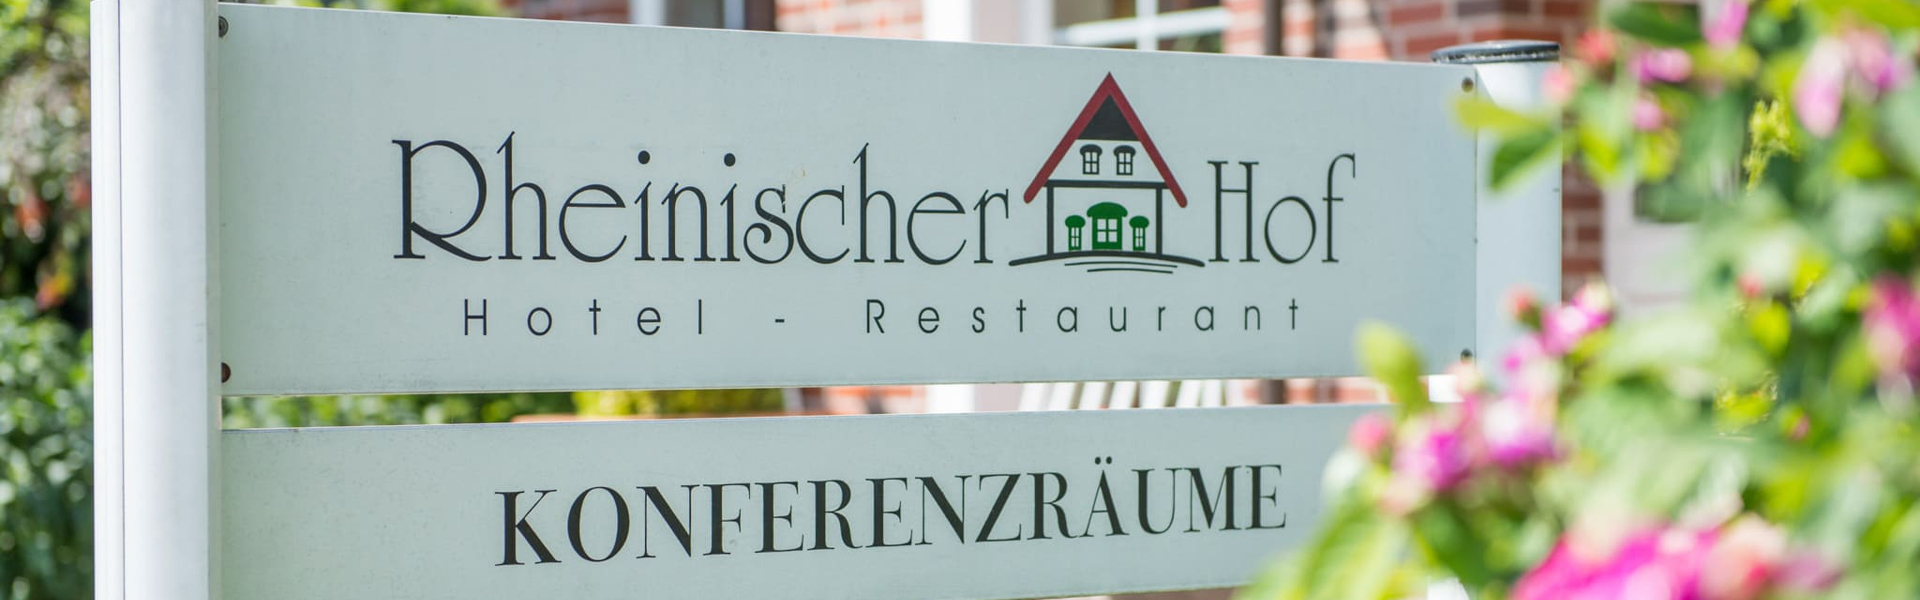 Rheinischer Hof Hotel und Restaurant